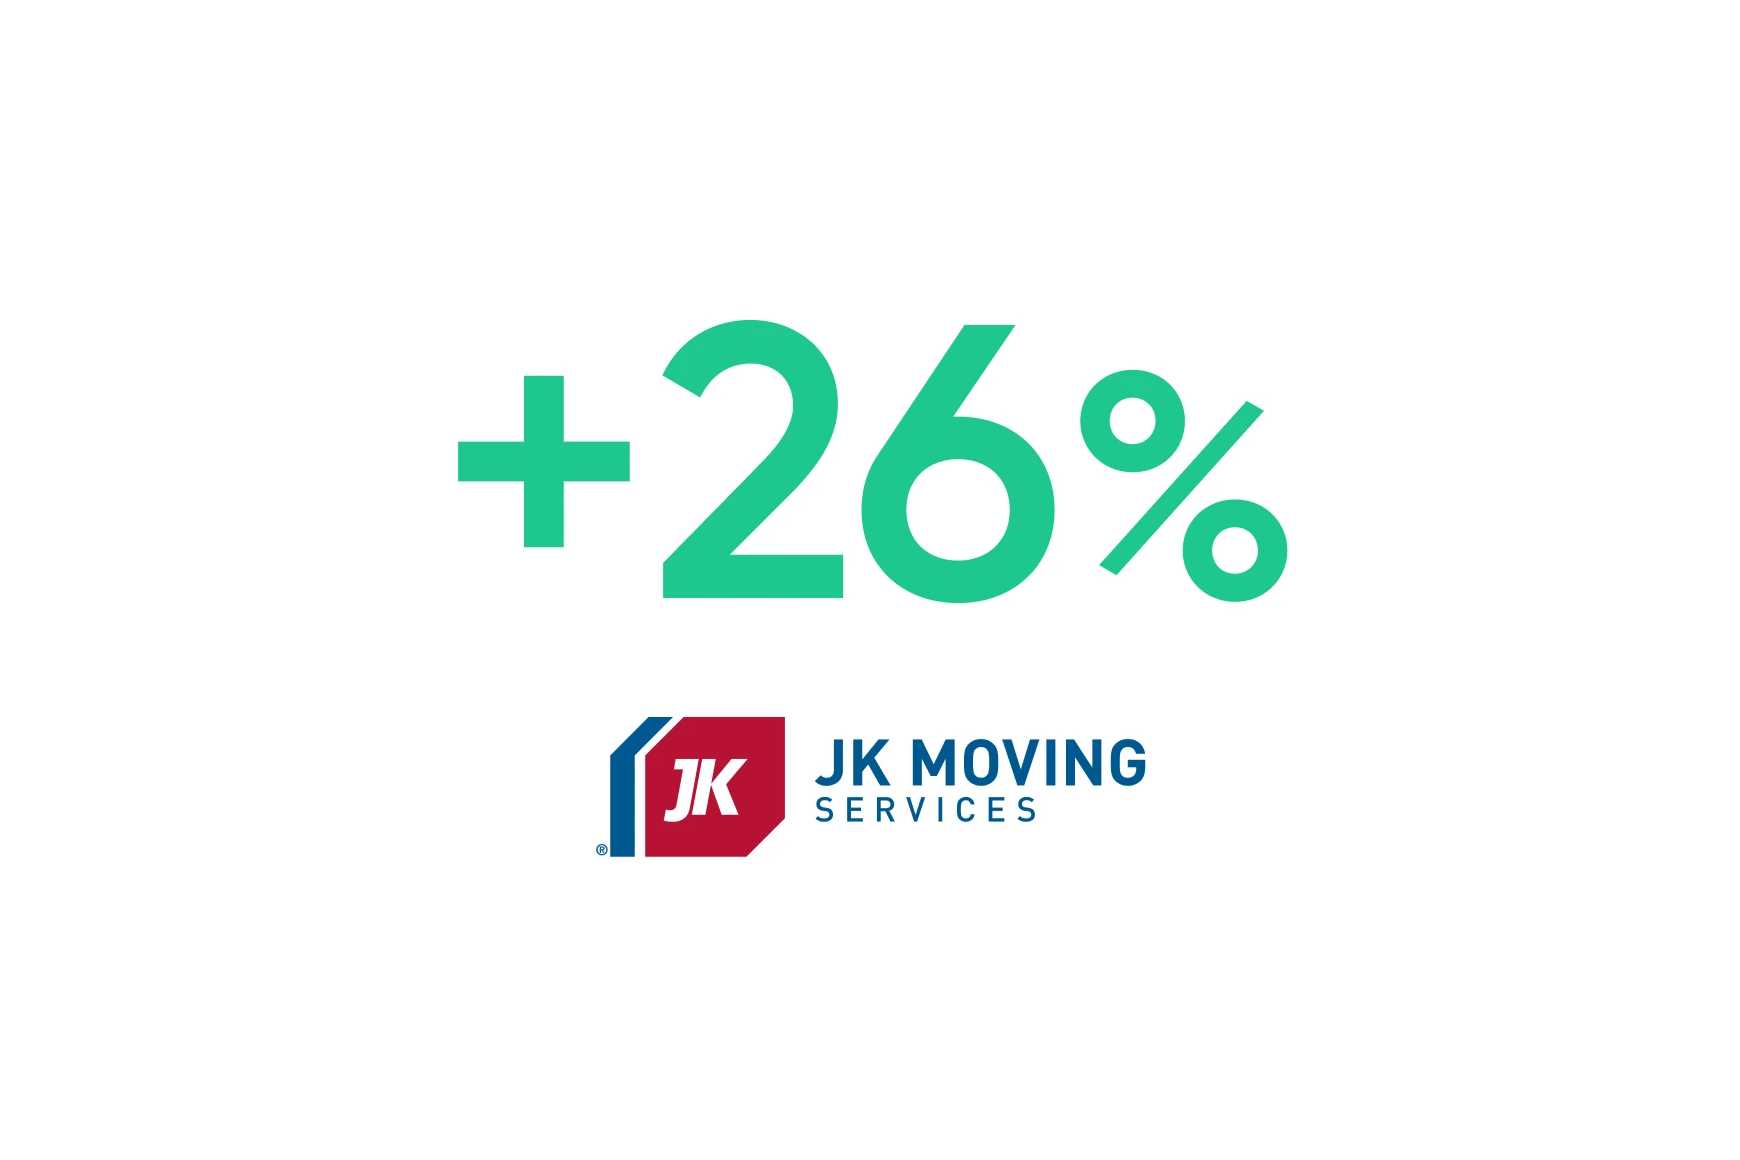 JK Moving Services: l'ottimizzazione basata sull'IA aumenta tasso di conversione delle vendite del 26%